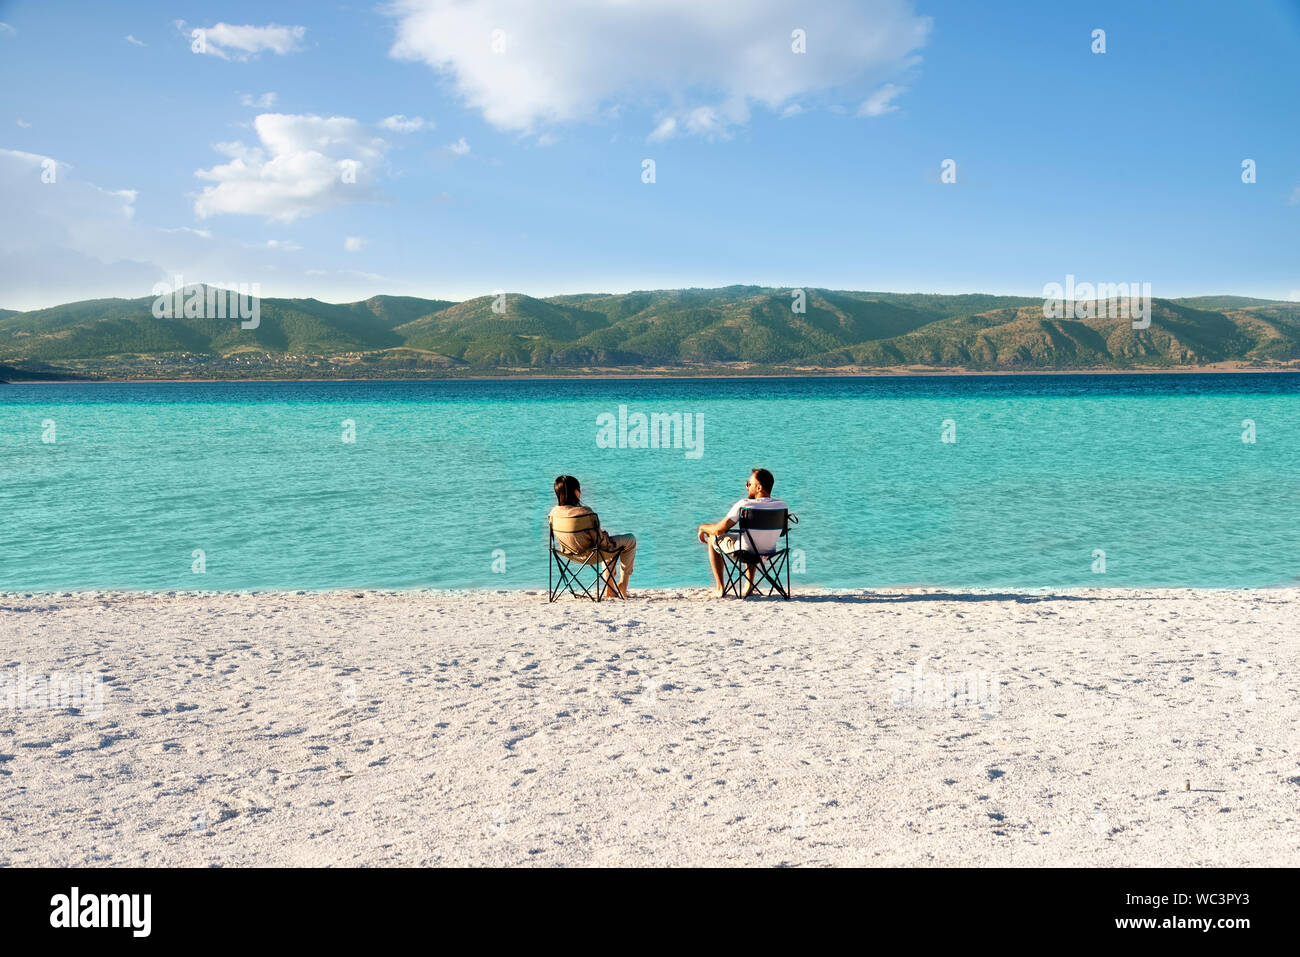 Salda lago como Maldivas, con arenas blancas y aguas color turquesa. Una pareja sentados en sillas portátiles cerca de la orilla del agua. Burdur / Turquía. Foto de stock